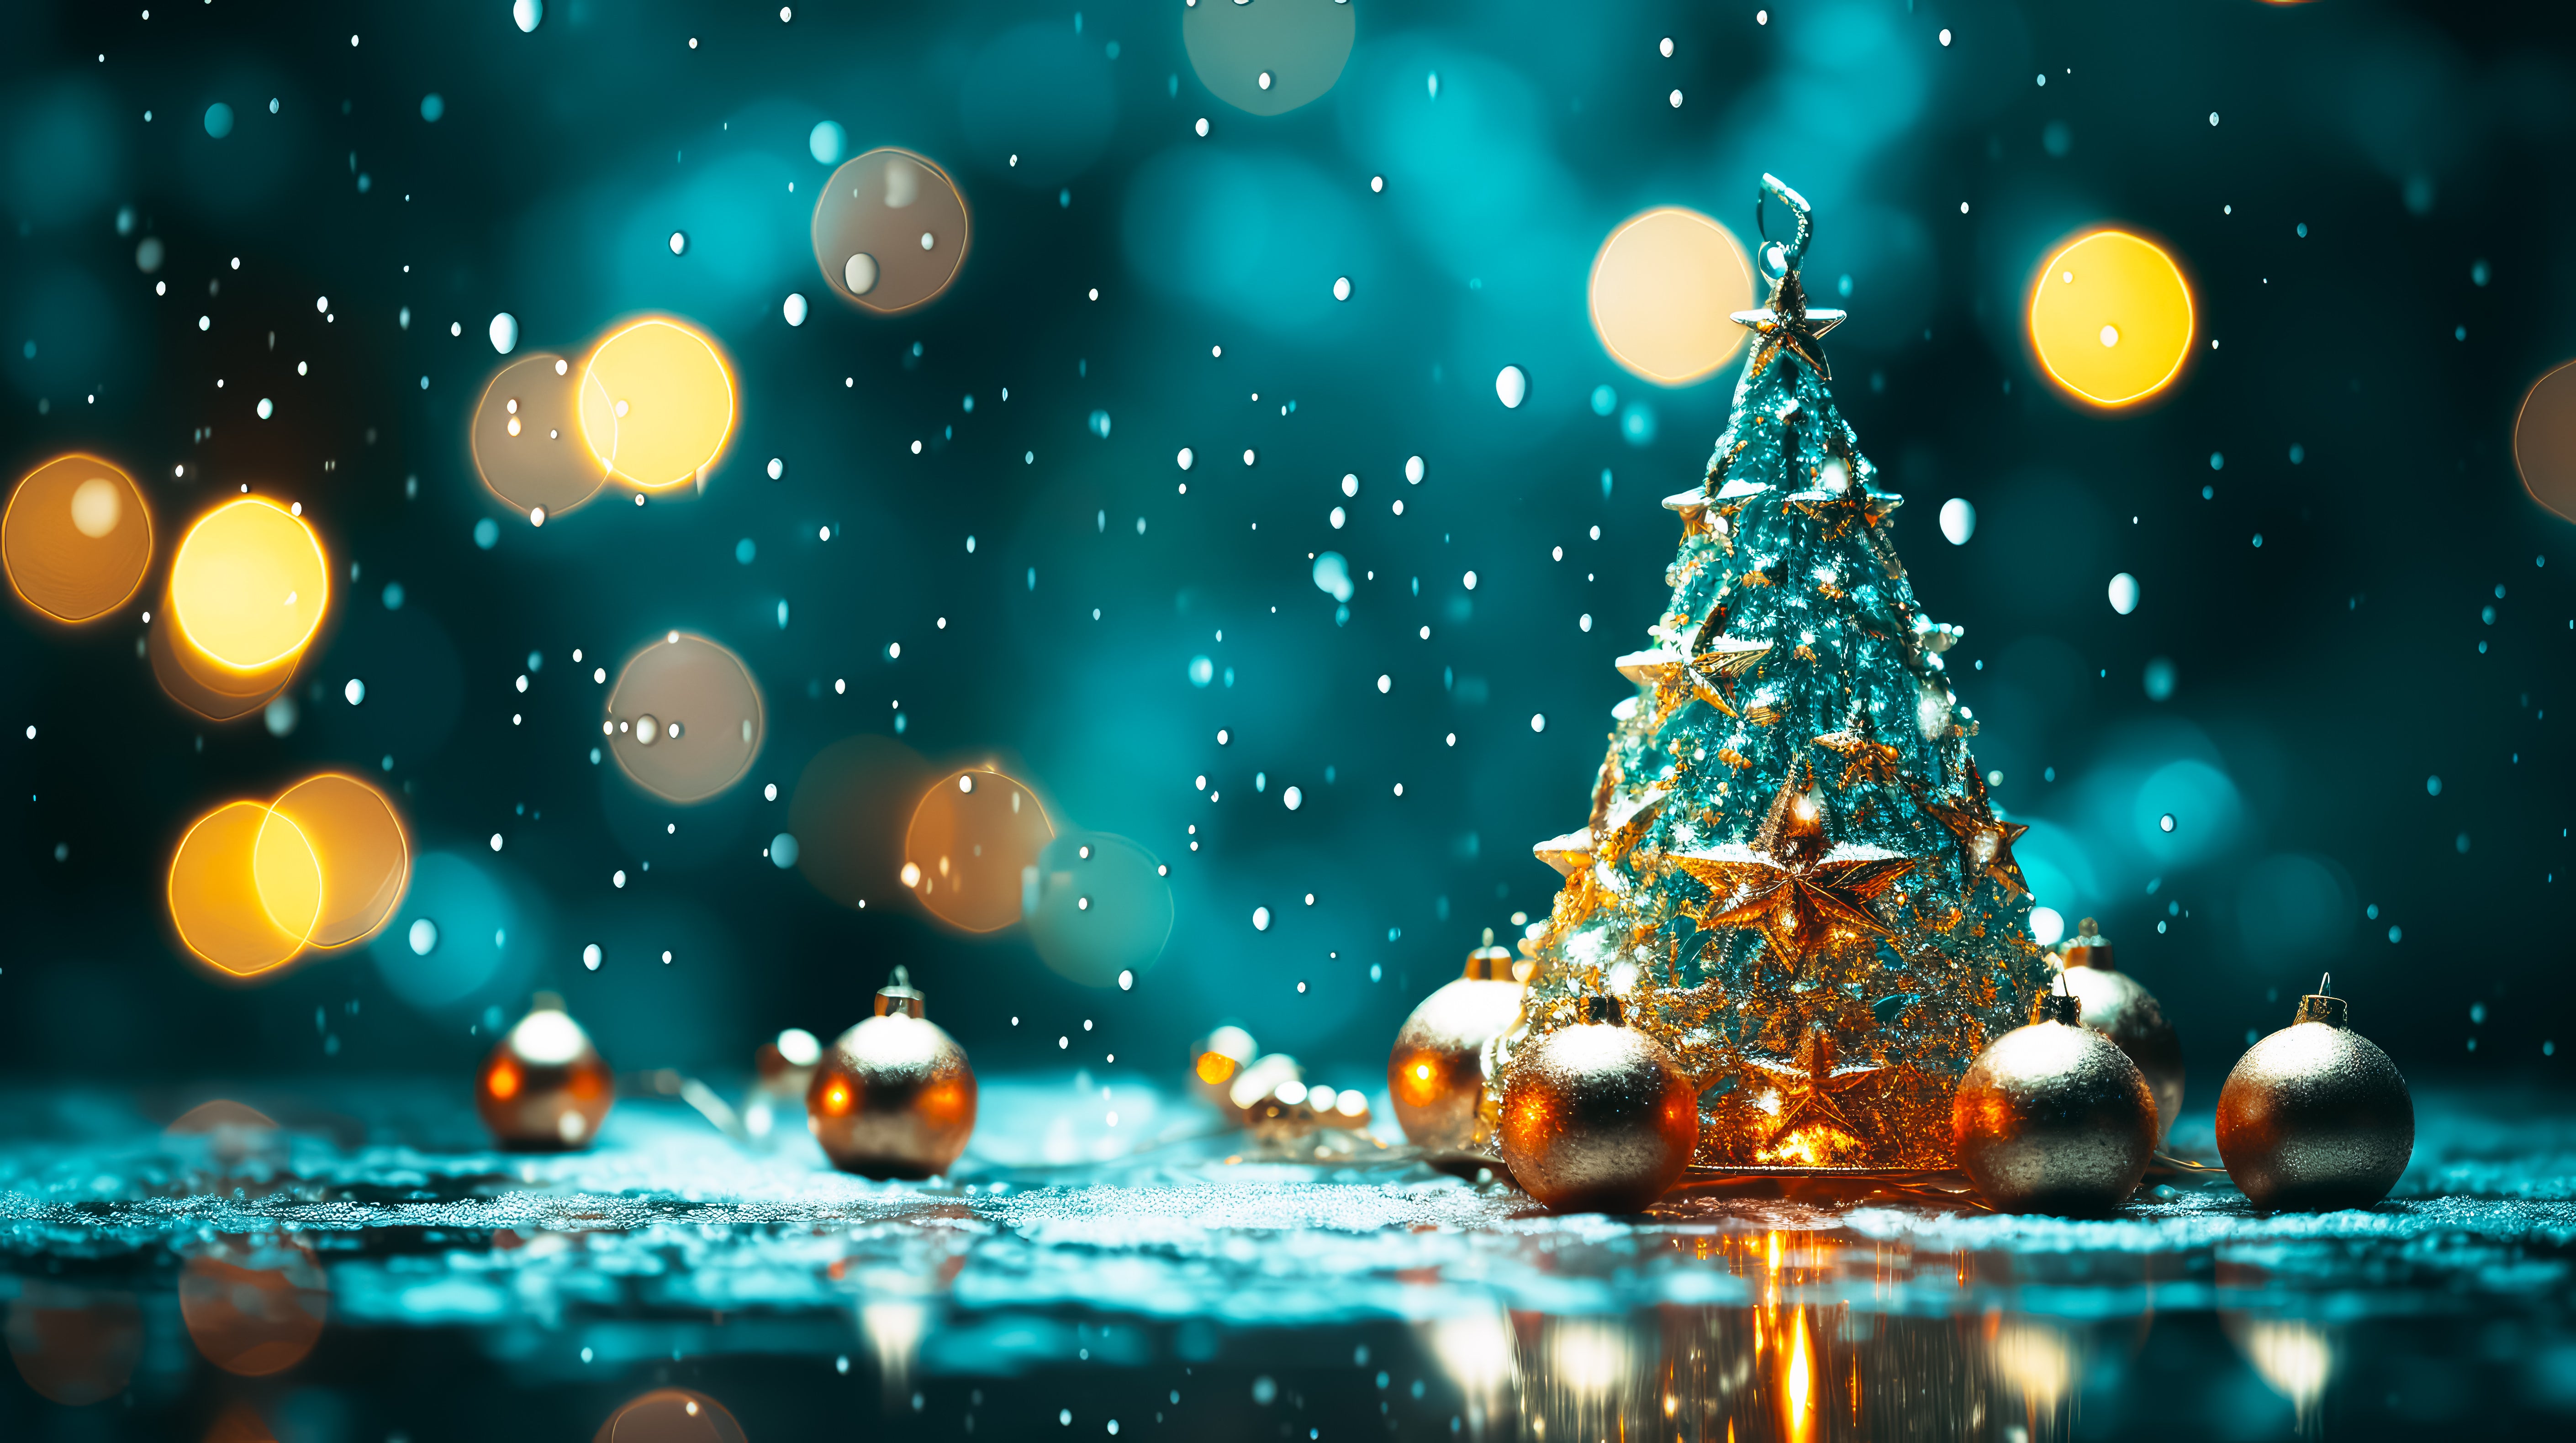 クリスマスツリーとキラキラライトの無料AI画像素材 - ID.87926 